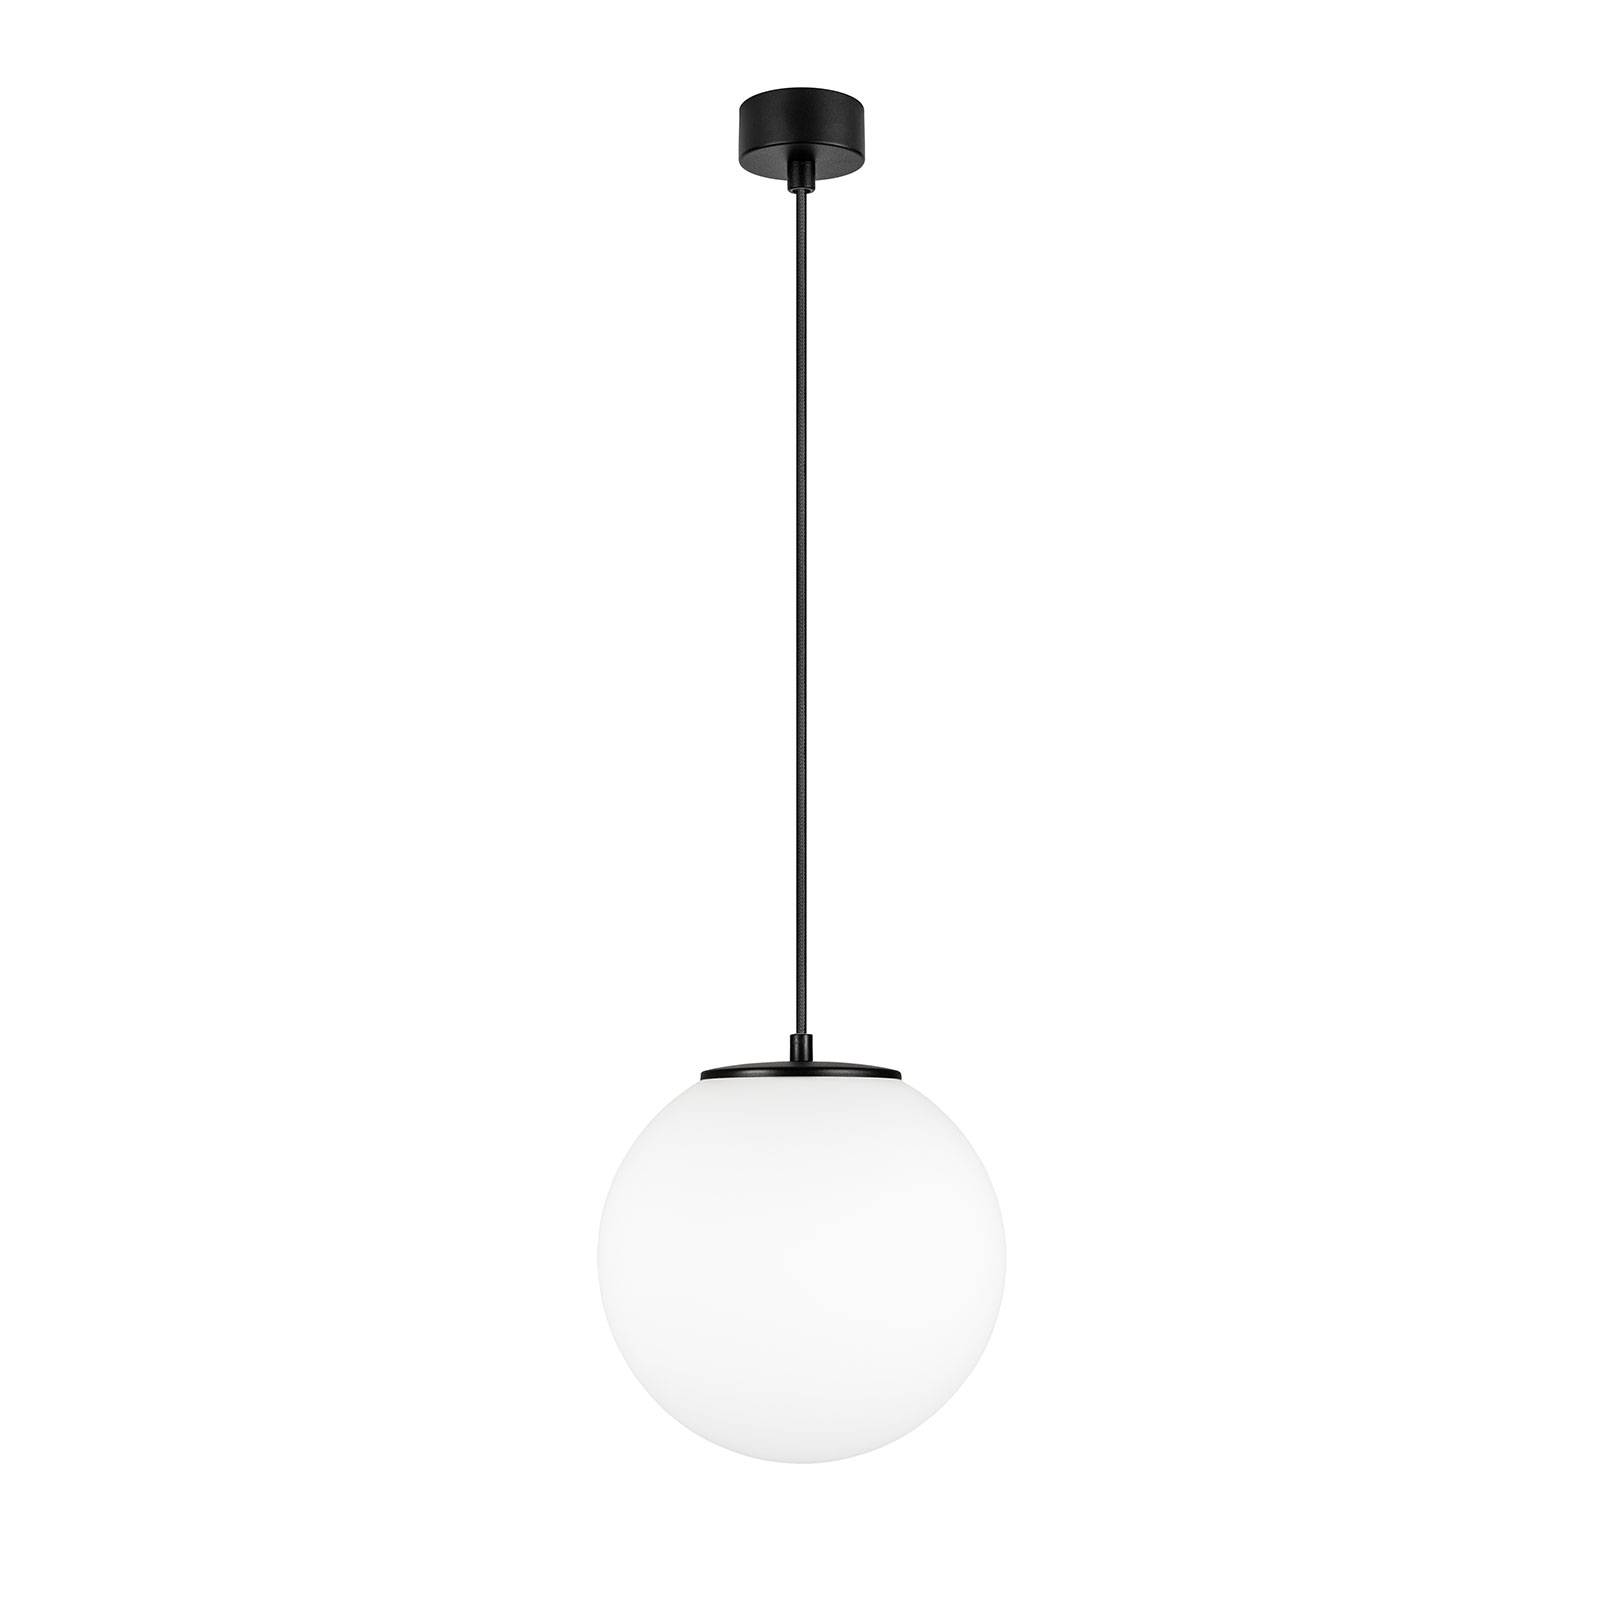 Hanglamp Tsuki M, 1-lamp, Ø 25 cm, zwart